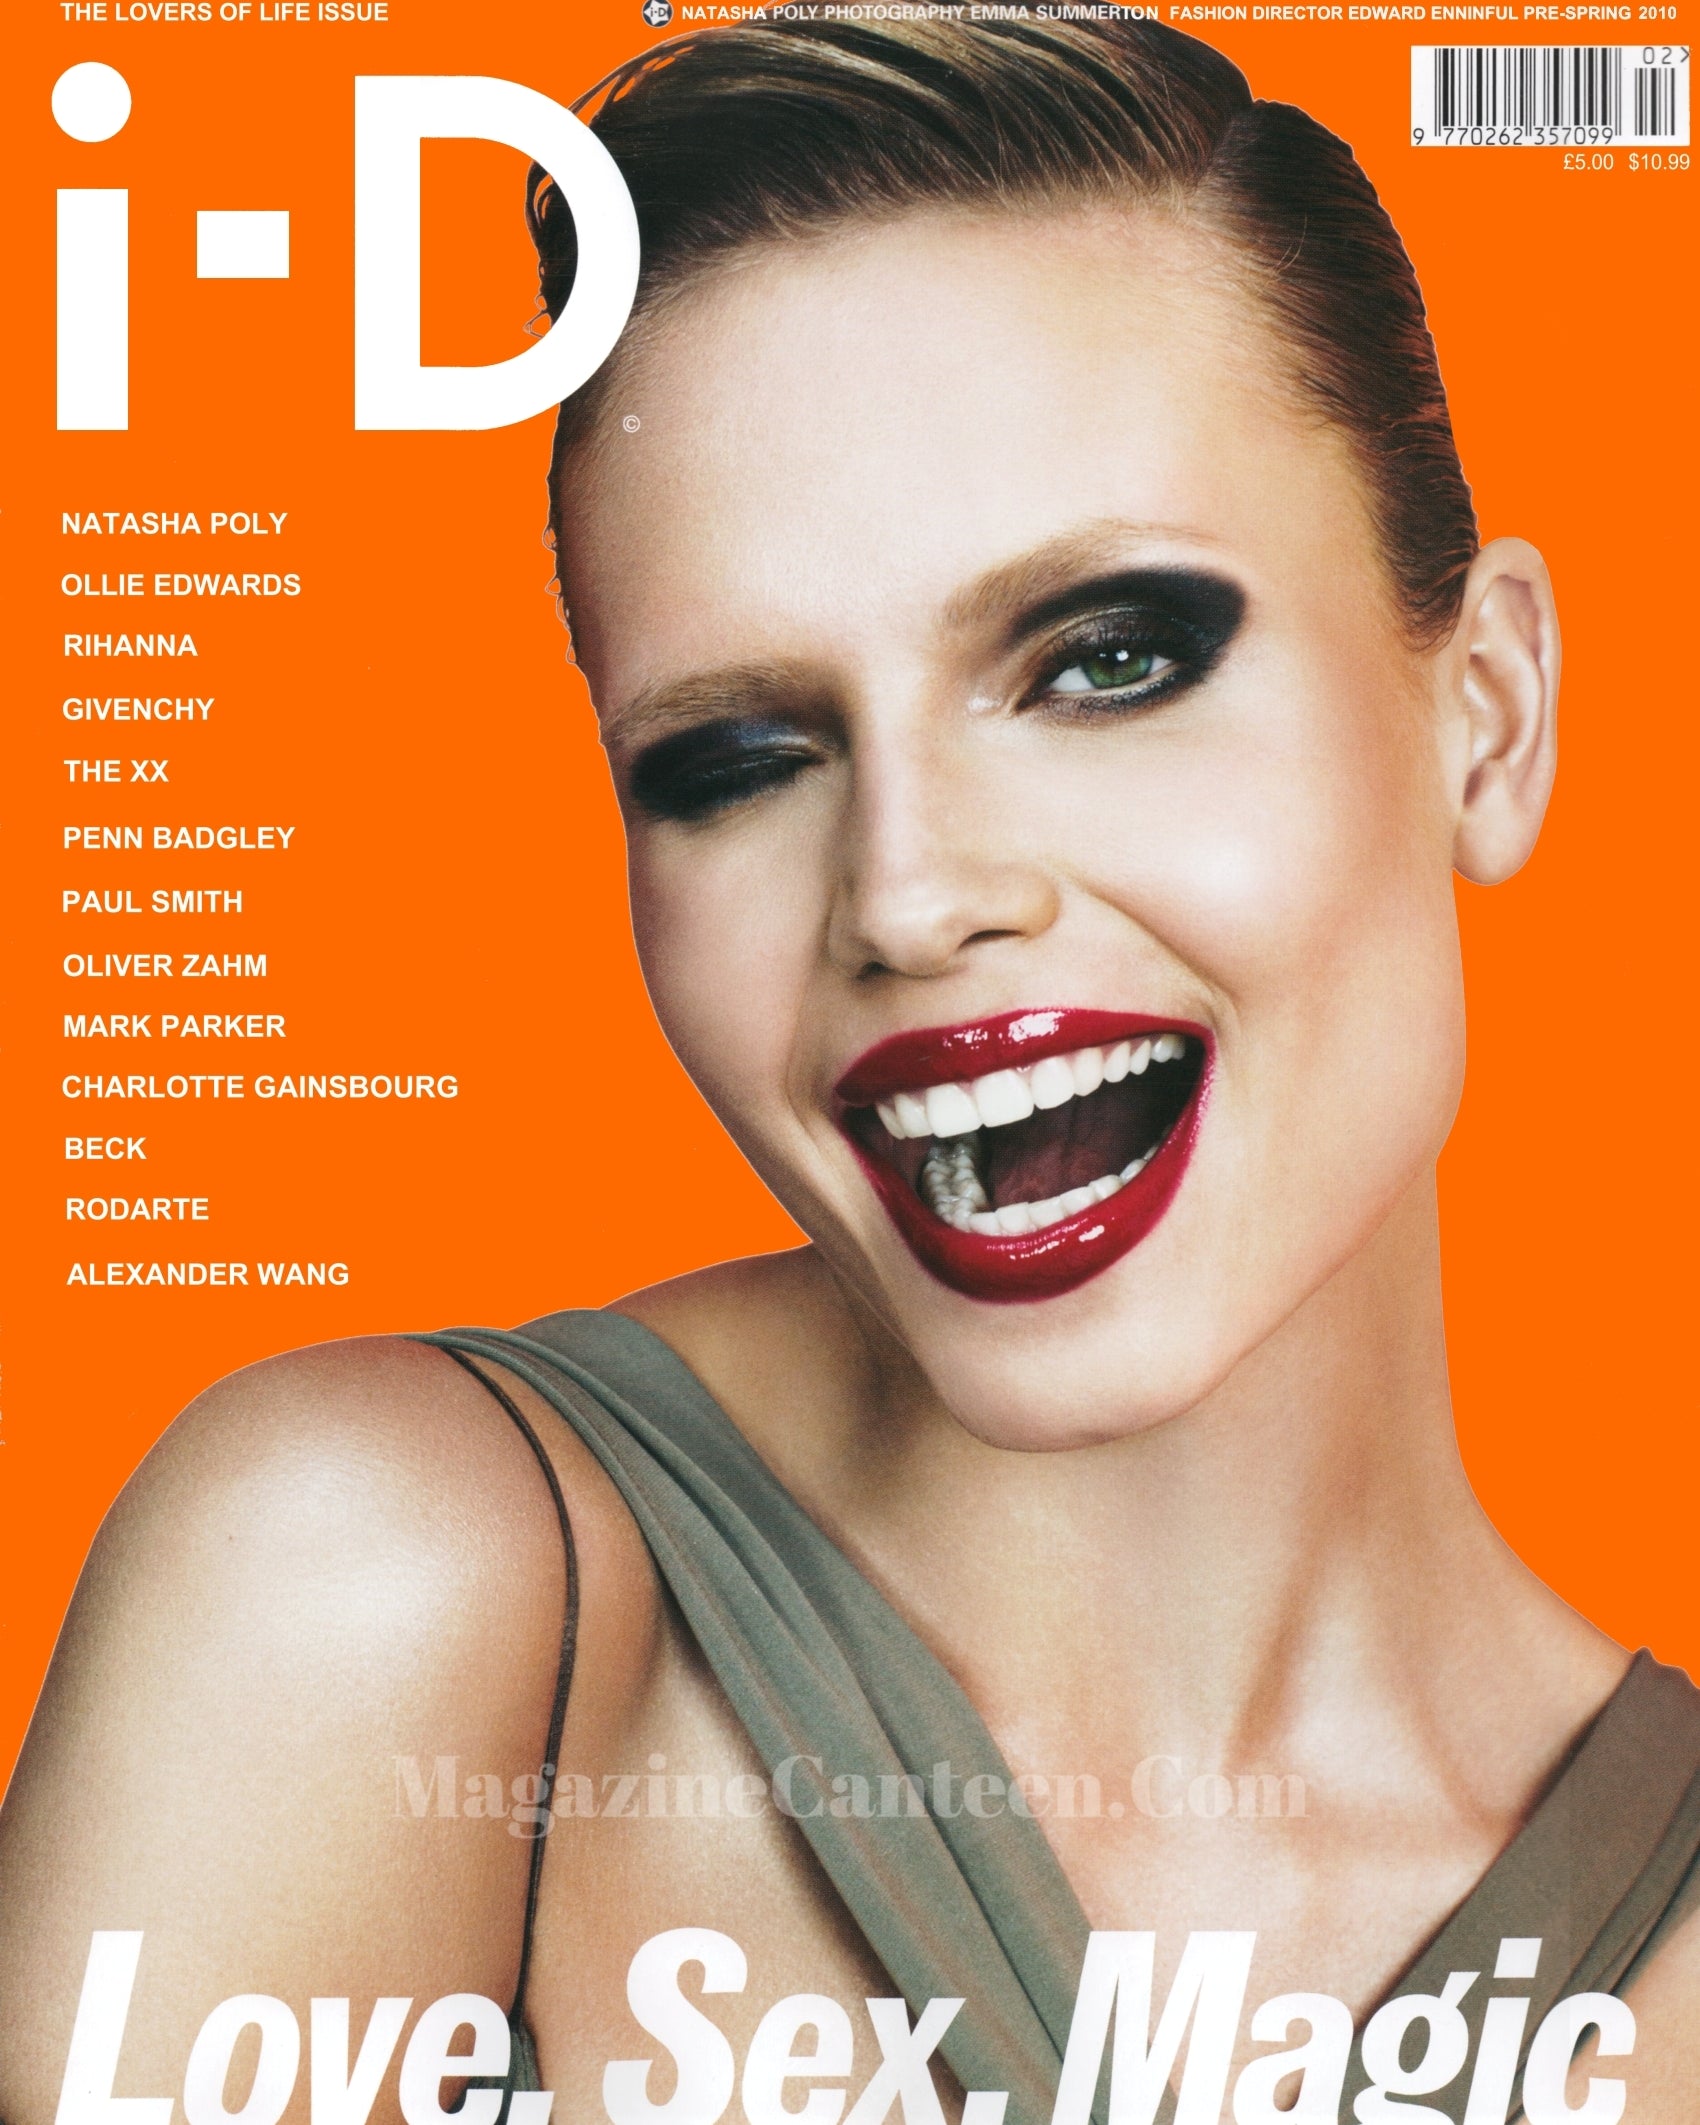 I-D Magazine 305 - Natasha Poly 2010